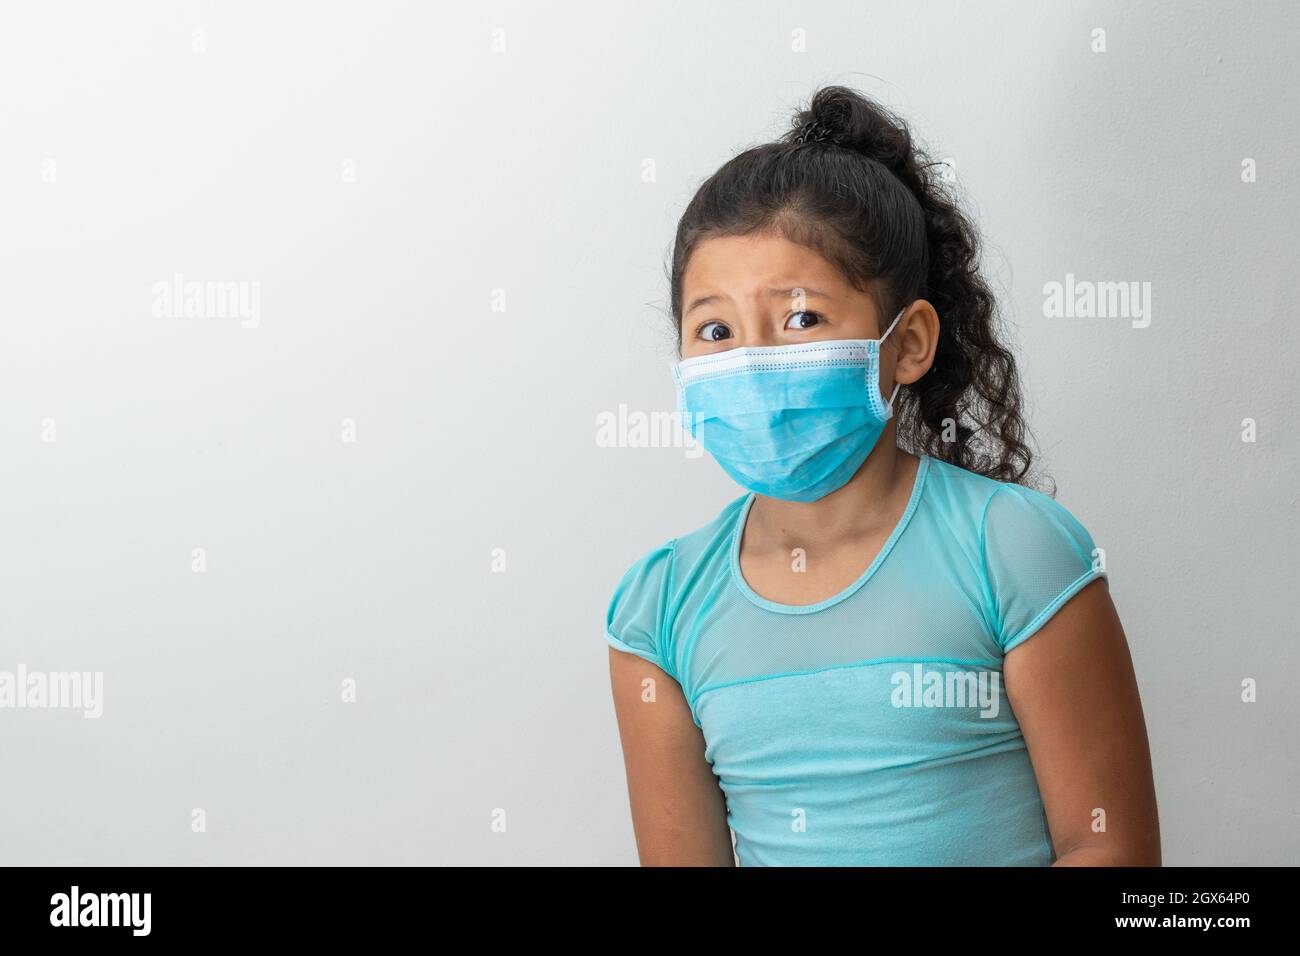 bambina (8 anni) seduta con le braccia incrociate, ragazza marrone con volto confuso che riceve una notizia con una maschera chirurgica blu. Medico, farmaceu Foto Stock